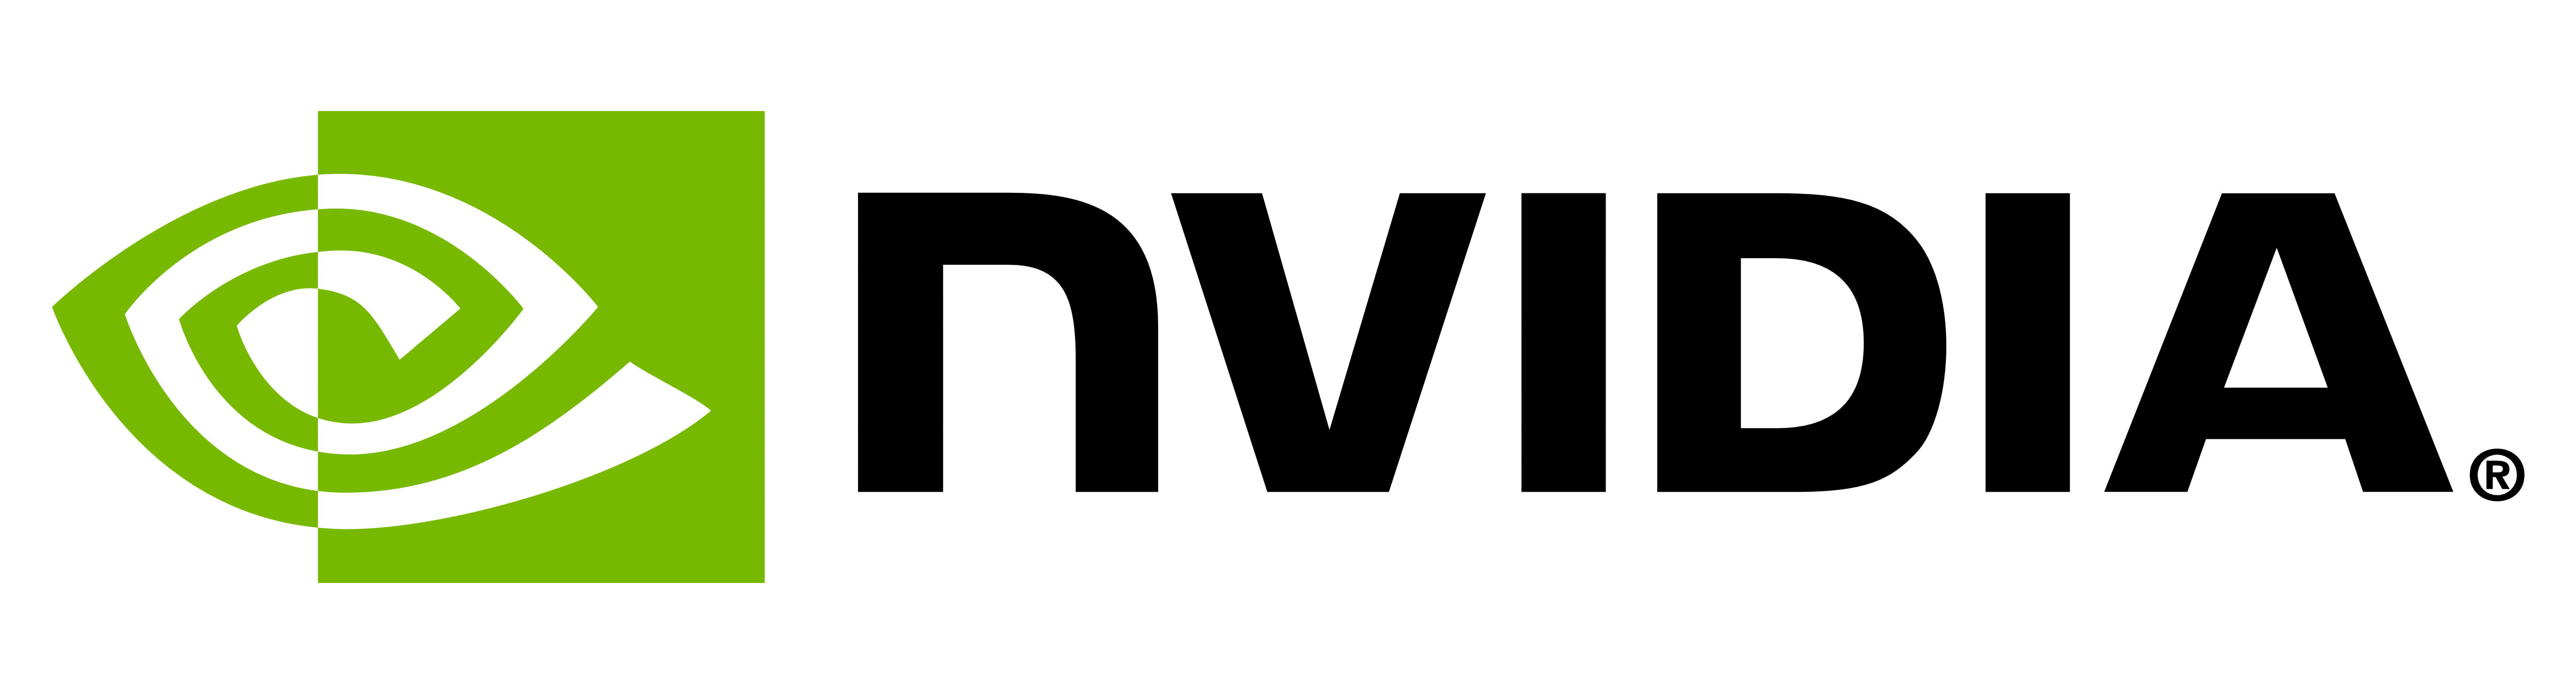 Betekenis NVIDIA-logo en -symbool | geschiedenis en evolutie